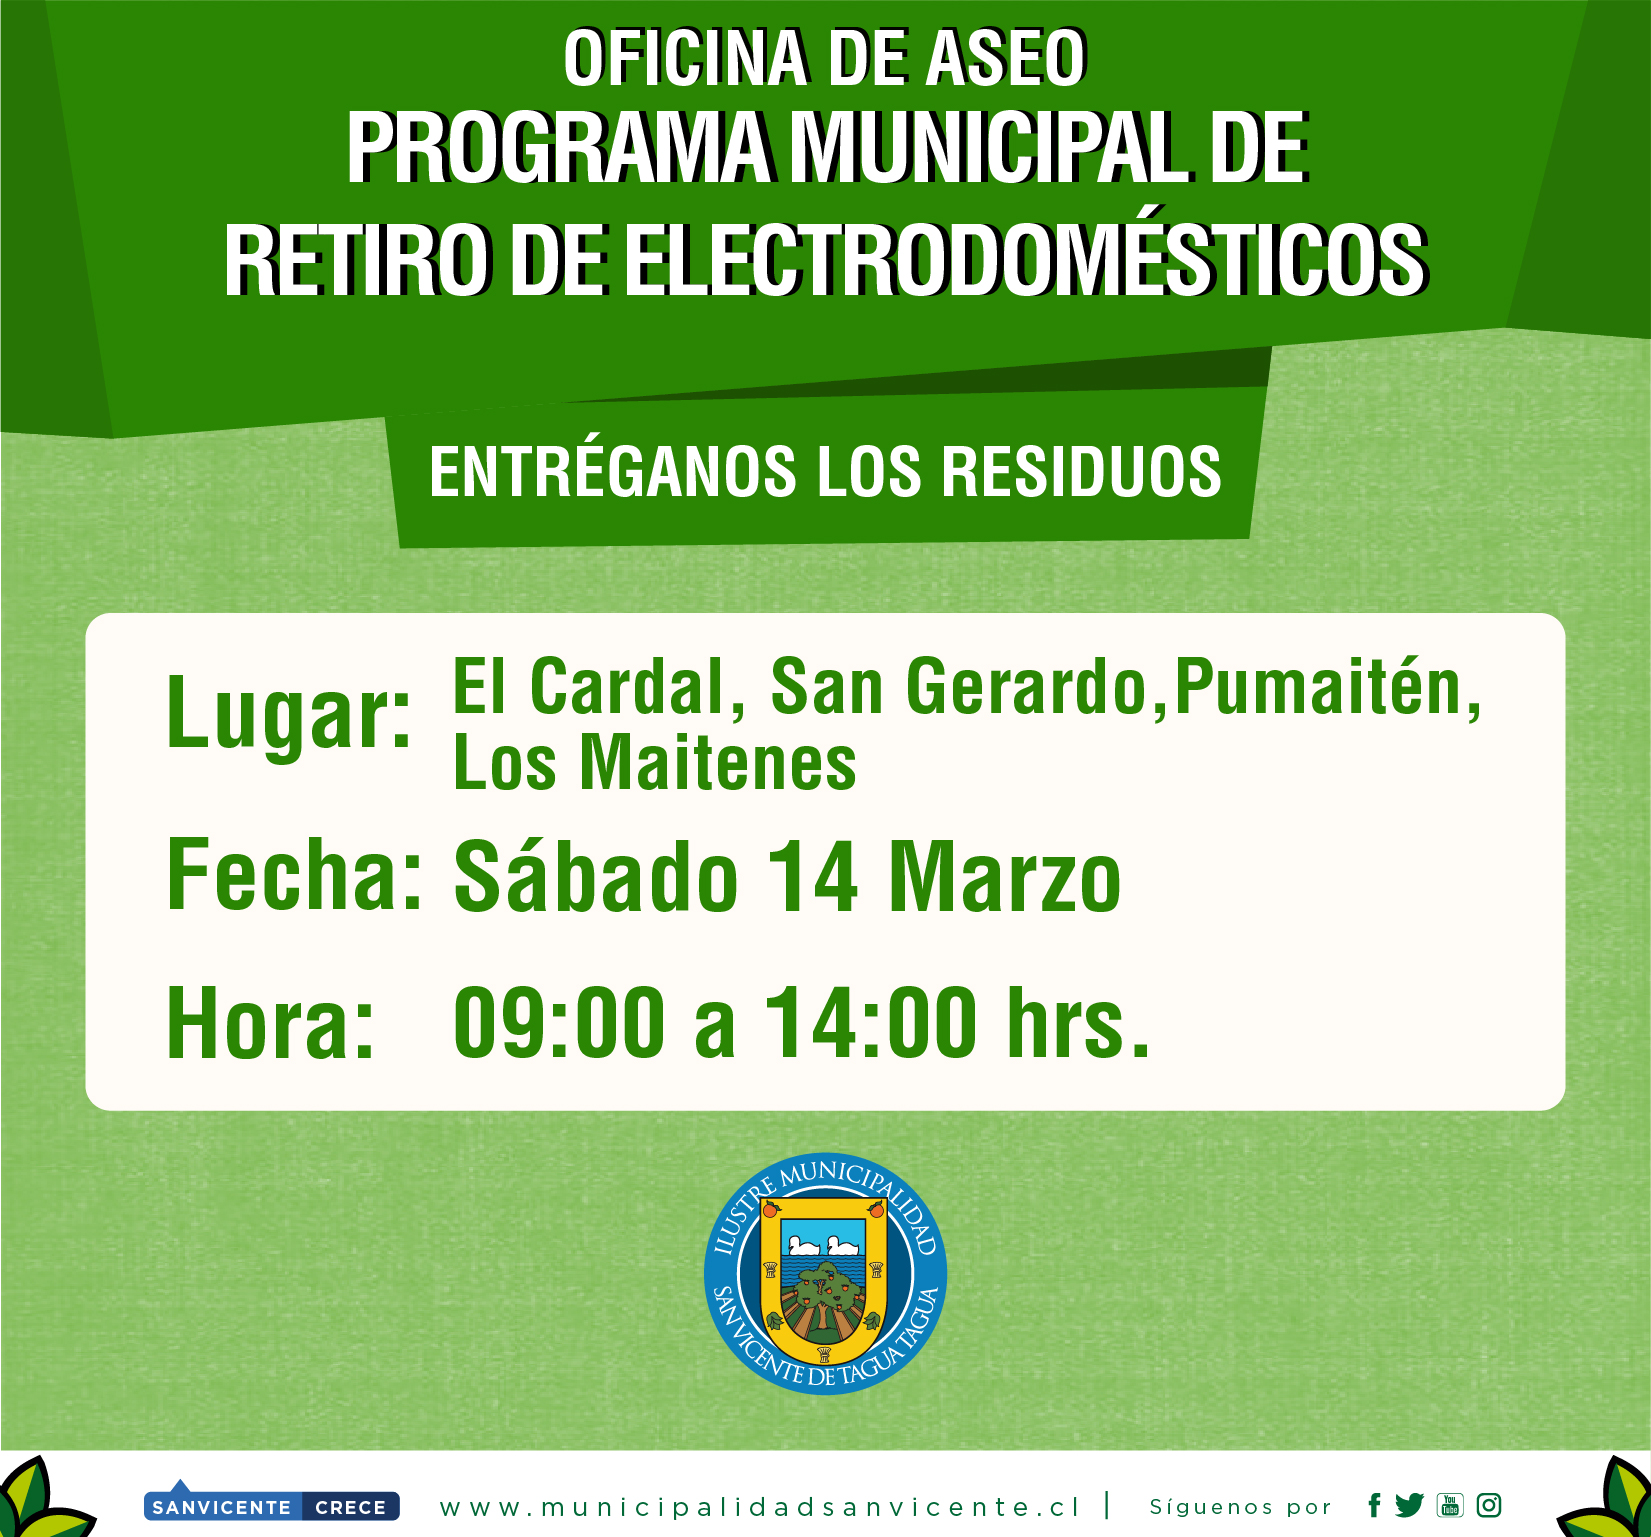 PROGRAMA MUNICIPAL DE RETIRO DE ELECTRODOMÉSTICOS EN DESUSO Y MATERIALES RECICLABLES 2020